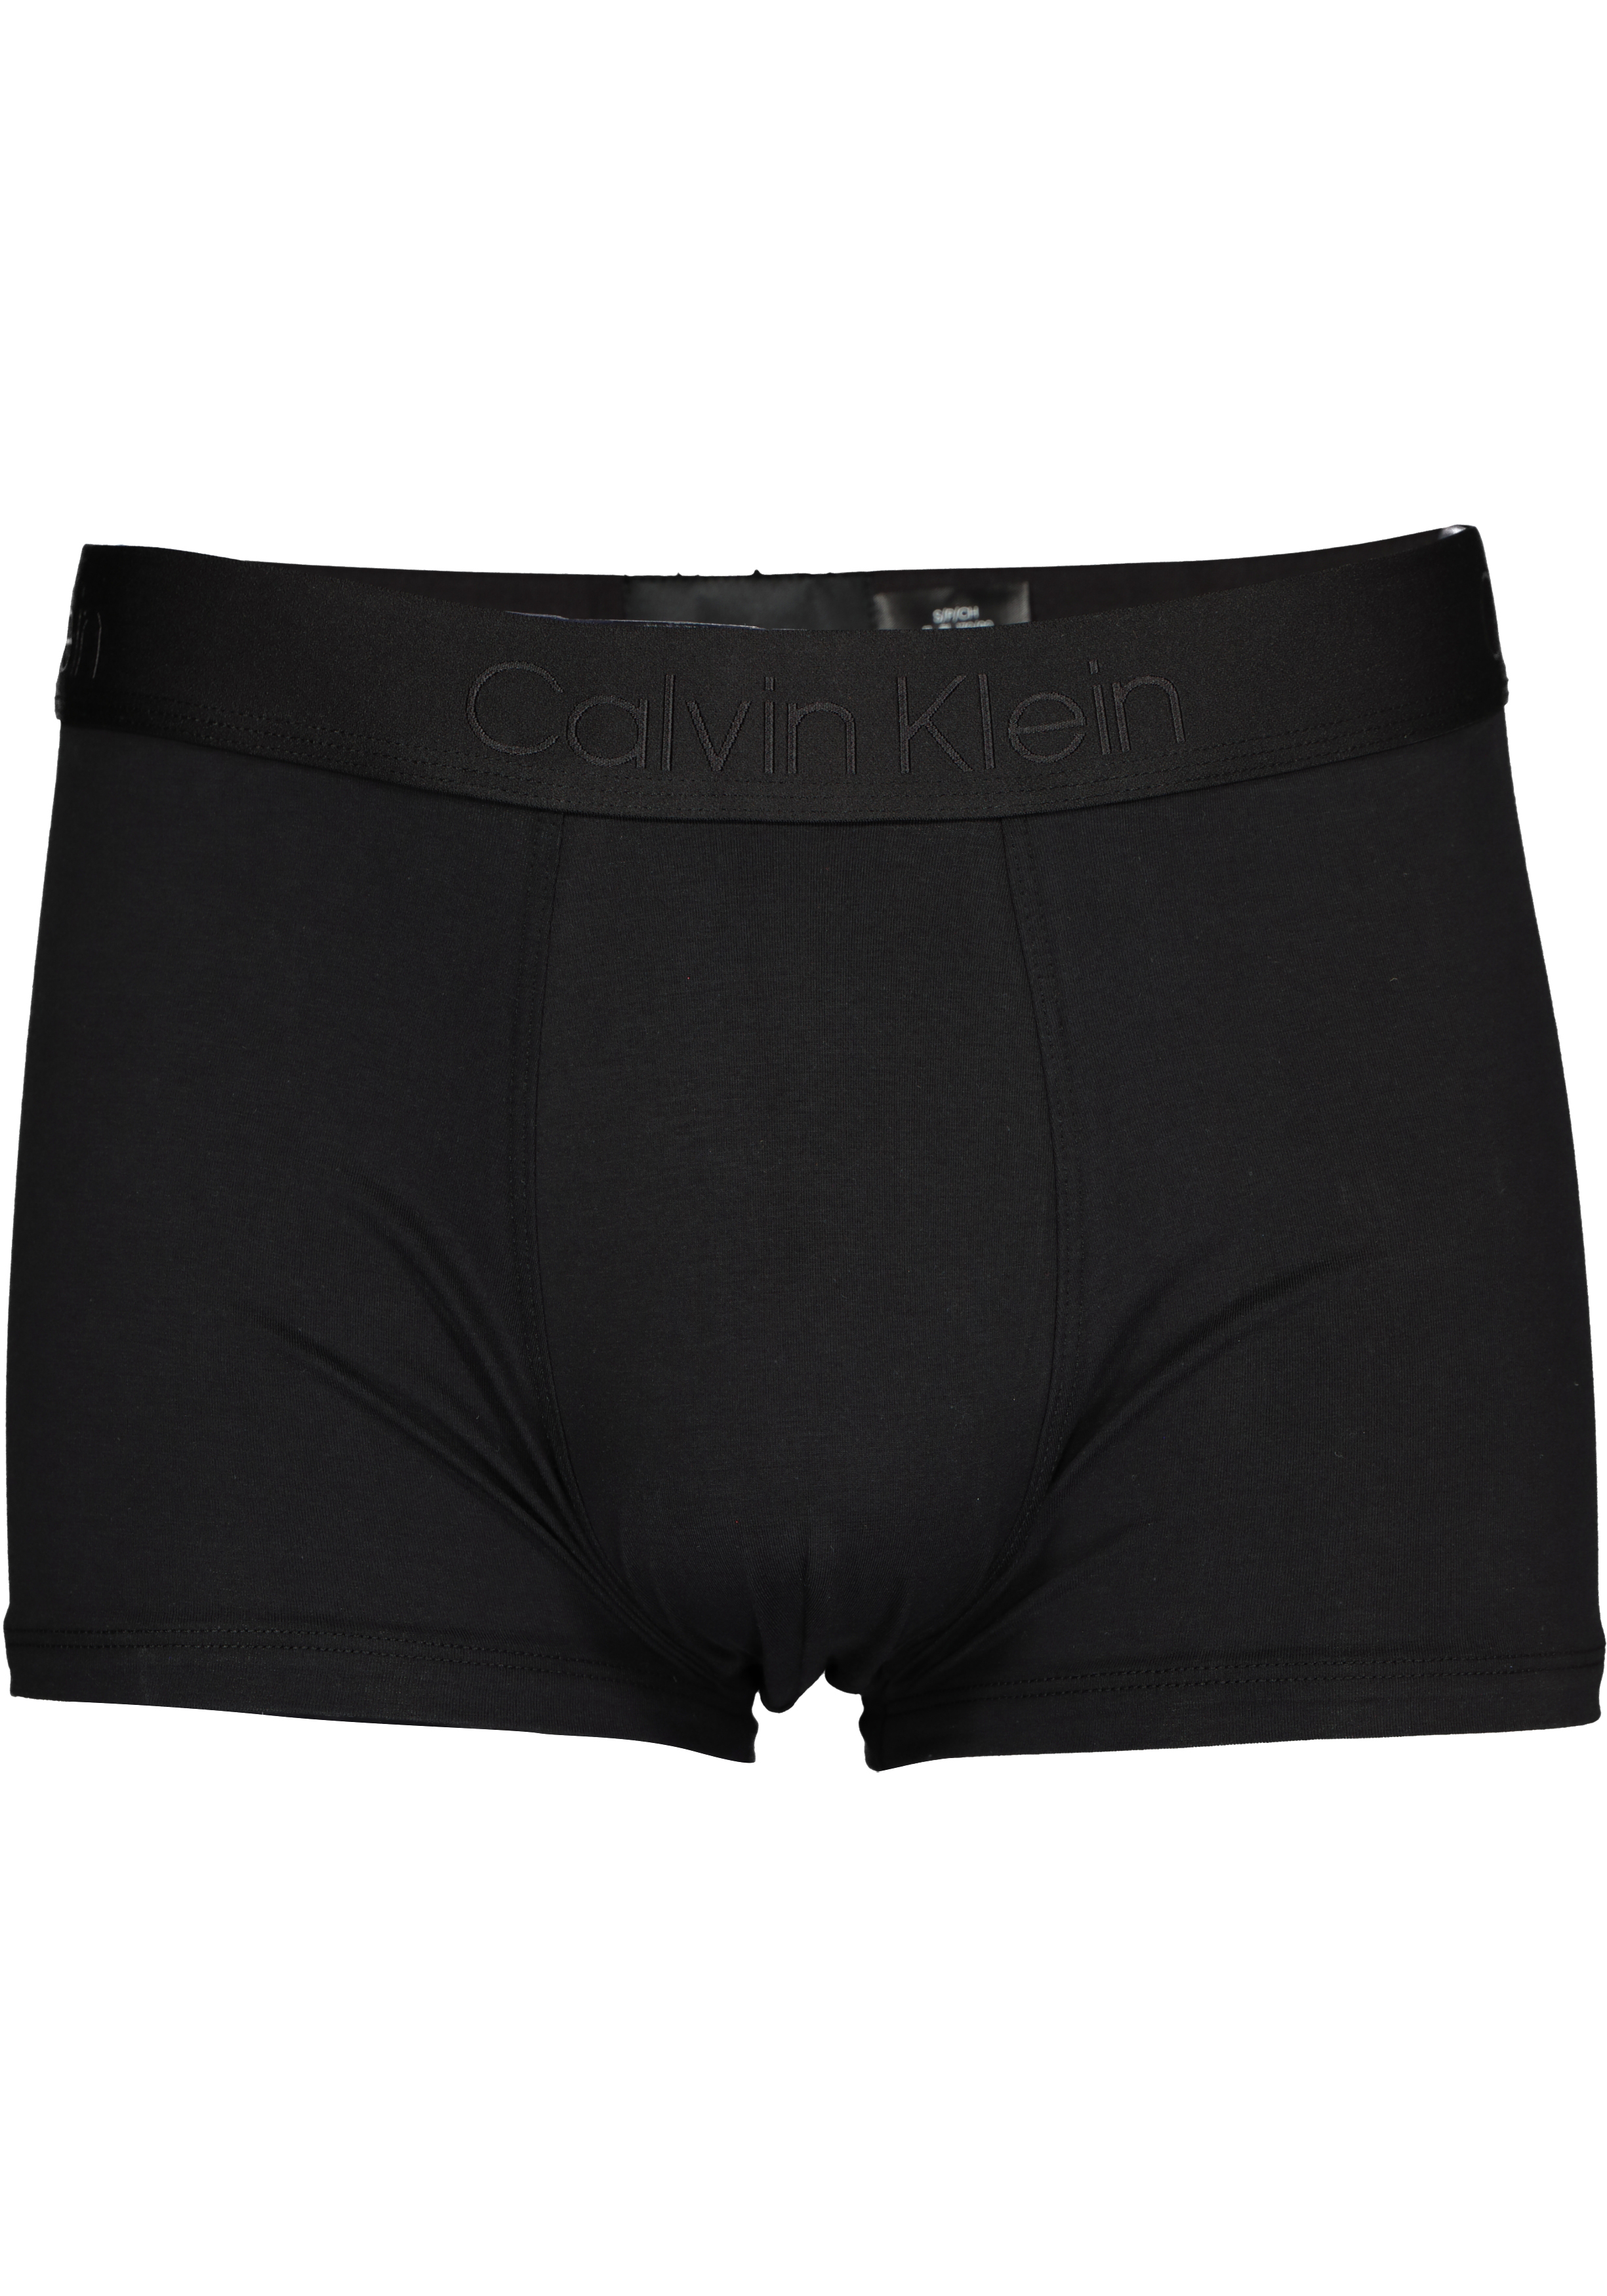 buiten gebruik Zaailing mooi Calvin Klein CK BLACK Cotton trunk (1-pack), heren boxer normale lengte,...  - SALE tot 50% korting - Gratis verzending en retour